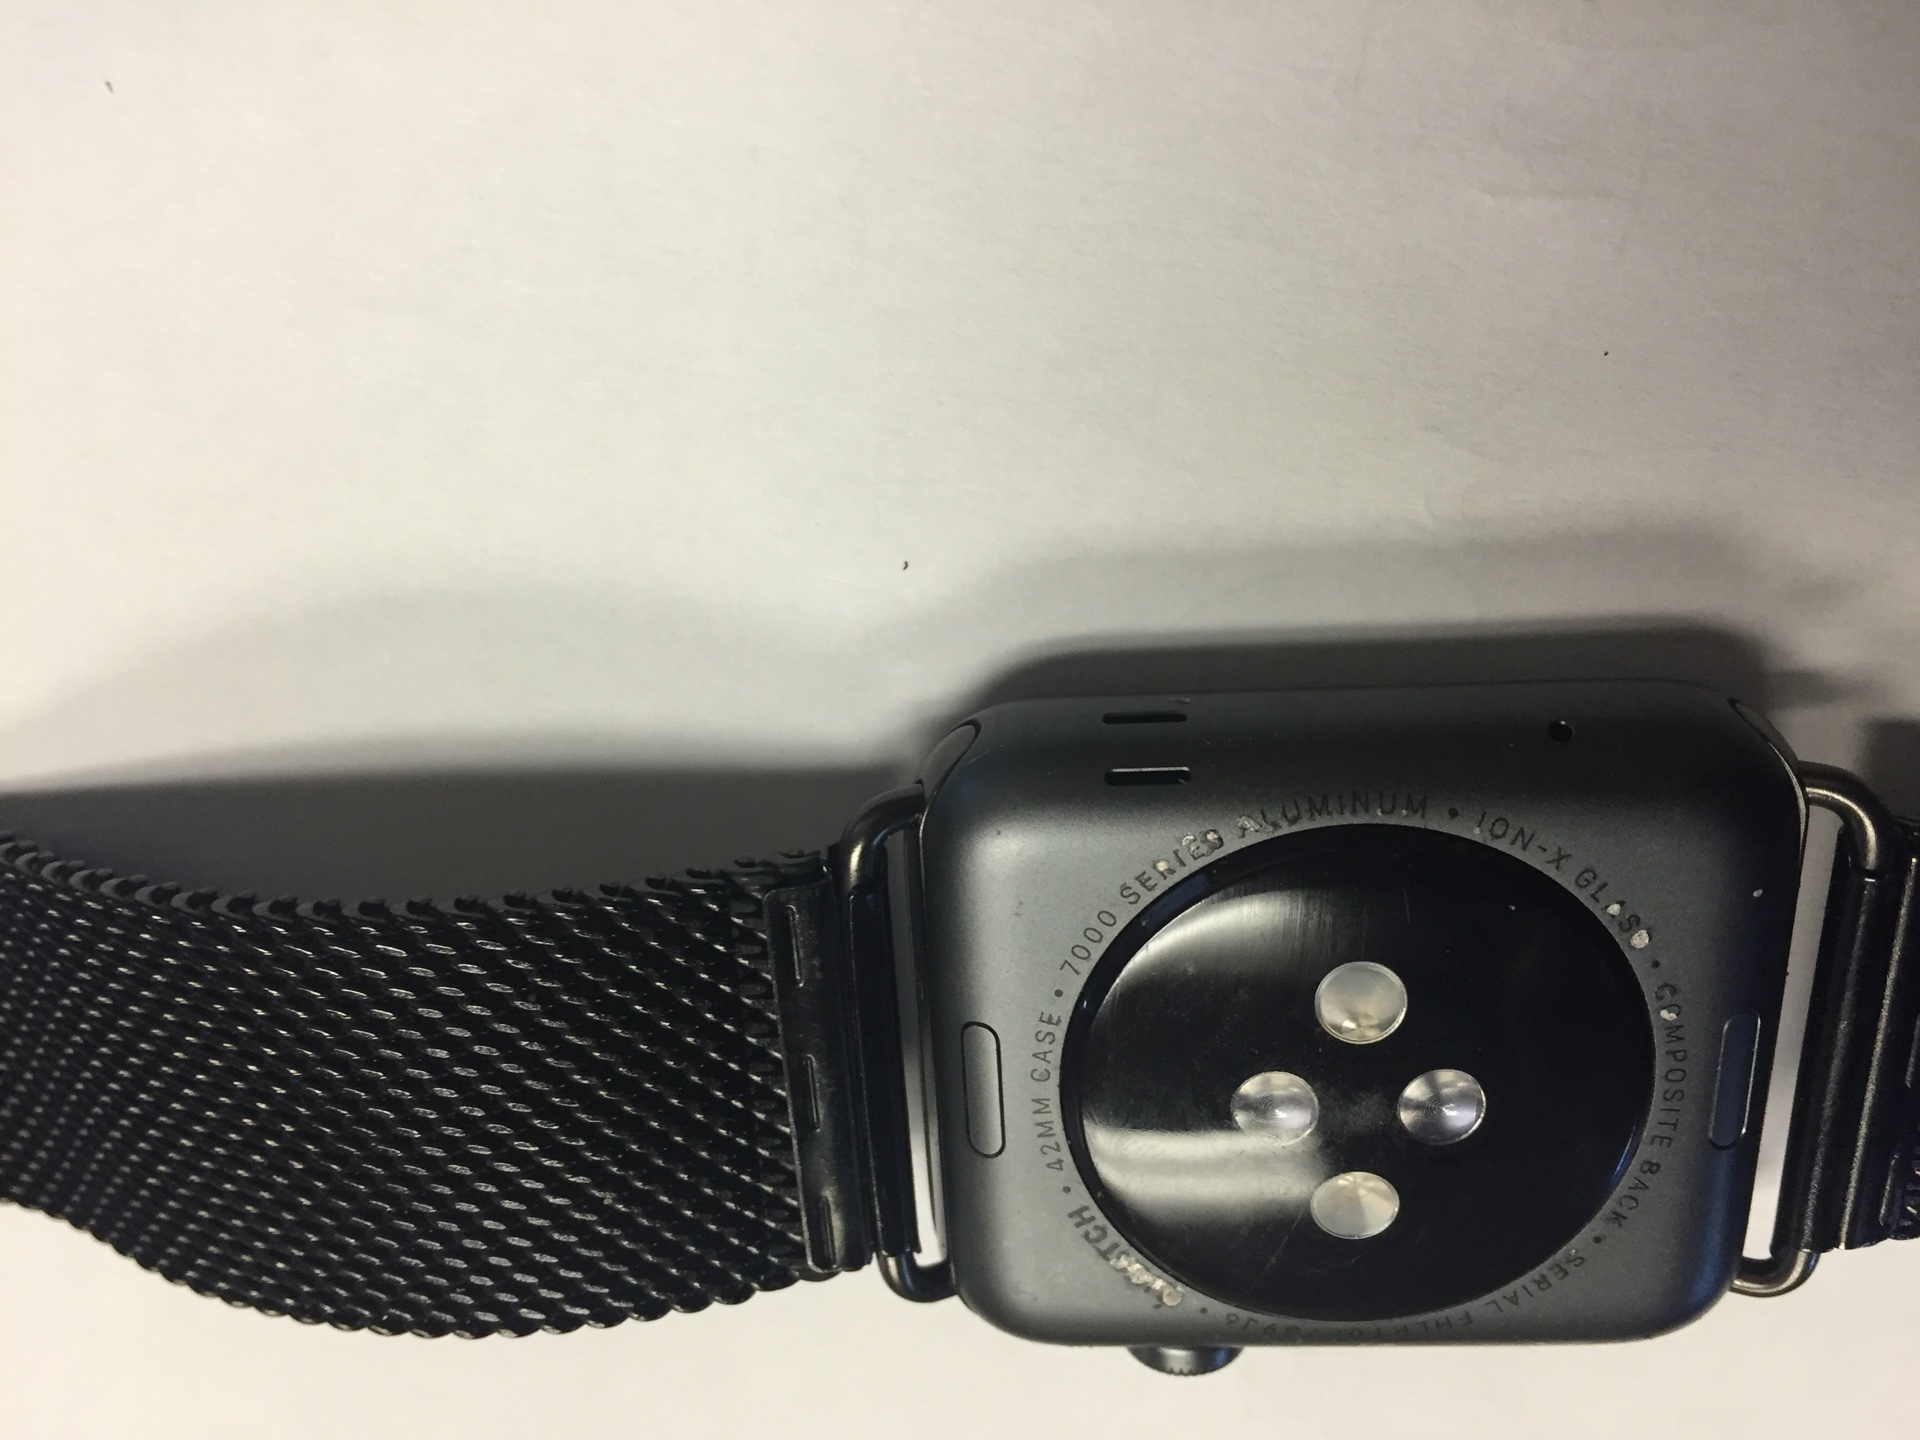 Apple Watch Sport peeling